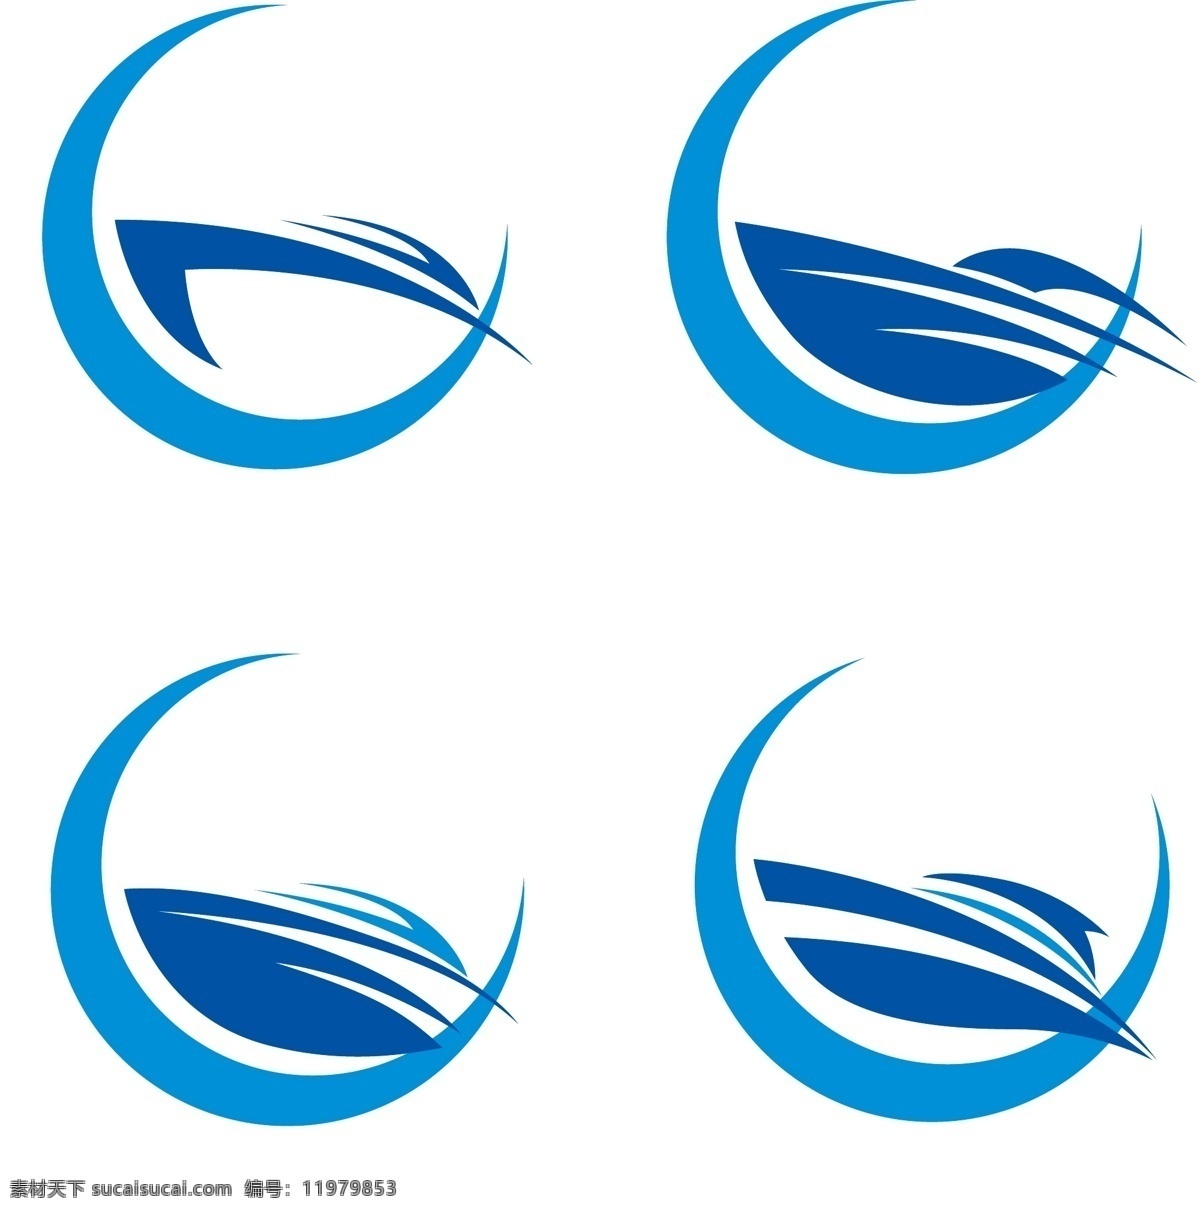 卡通 船 logo 矢量图 logo设计 个性化 标志图形 白色